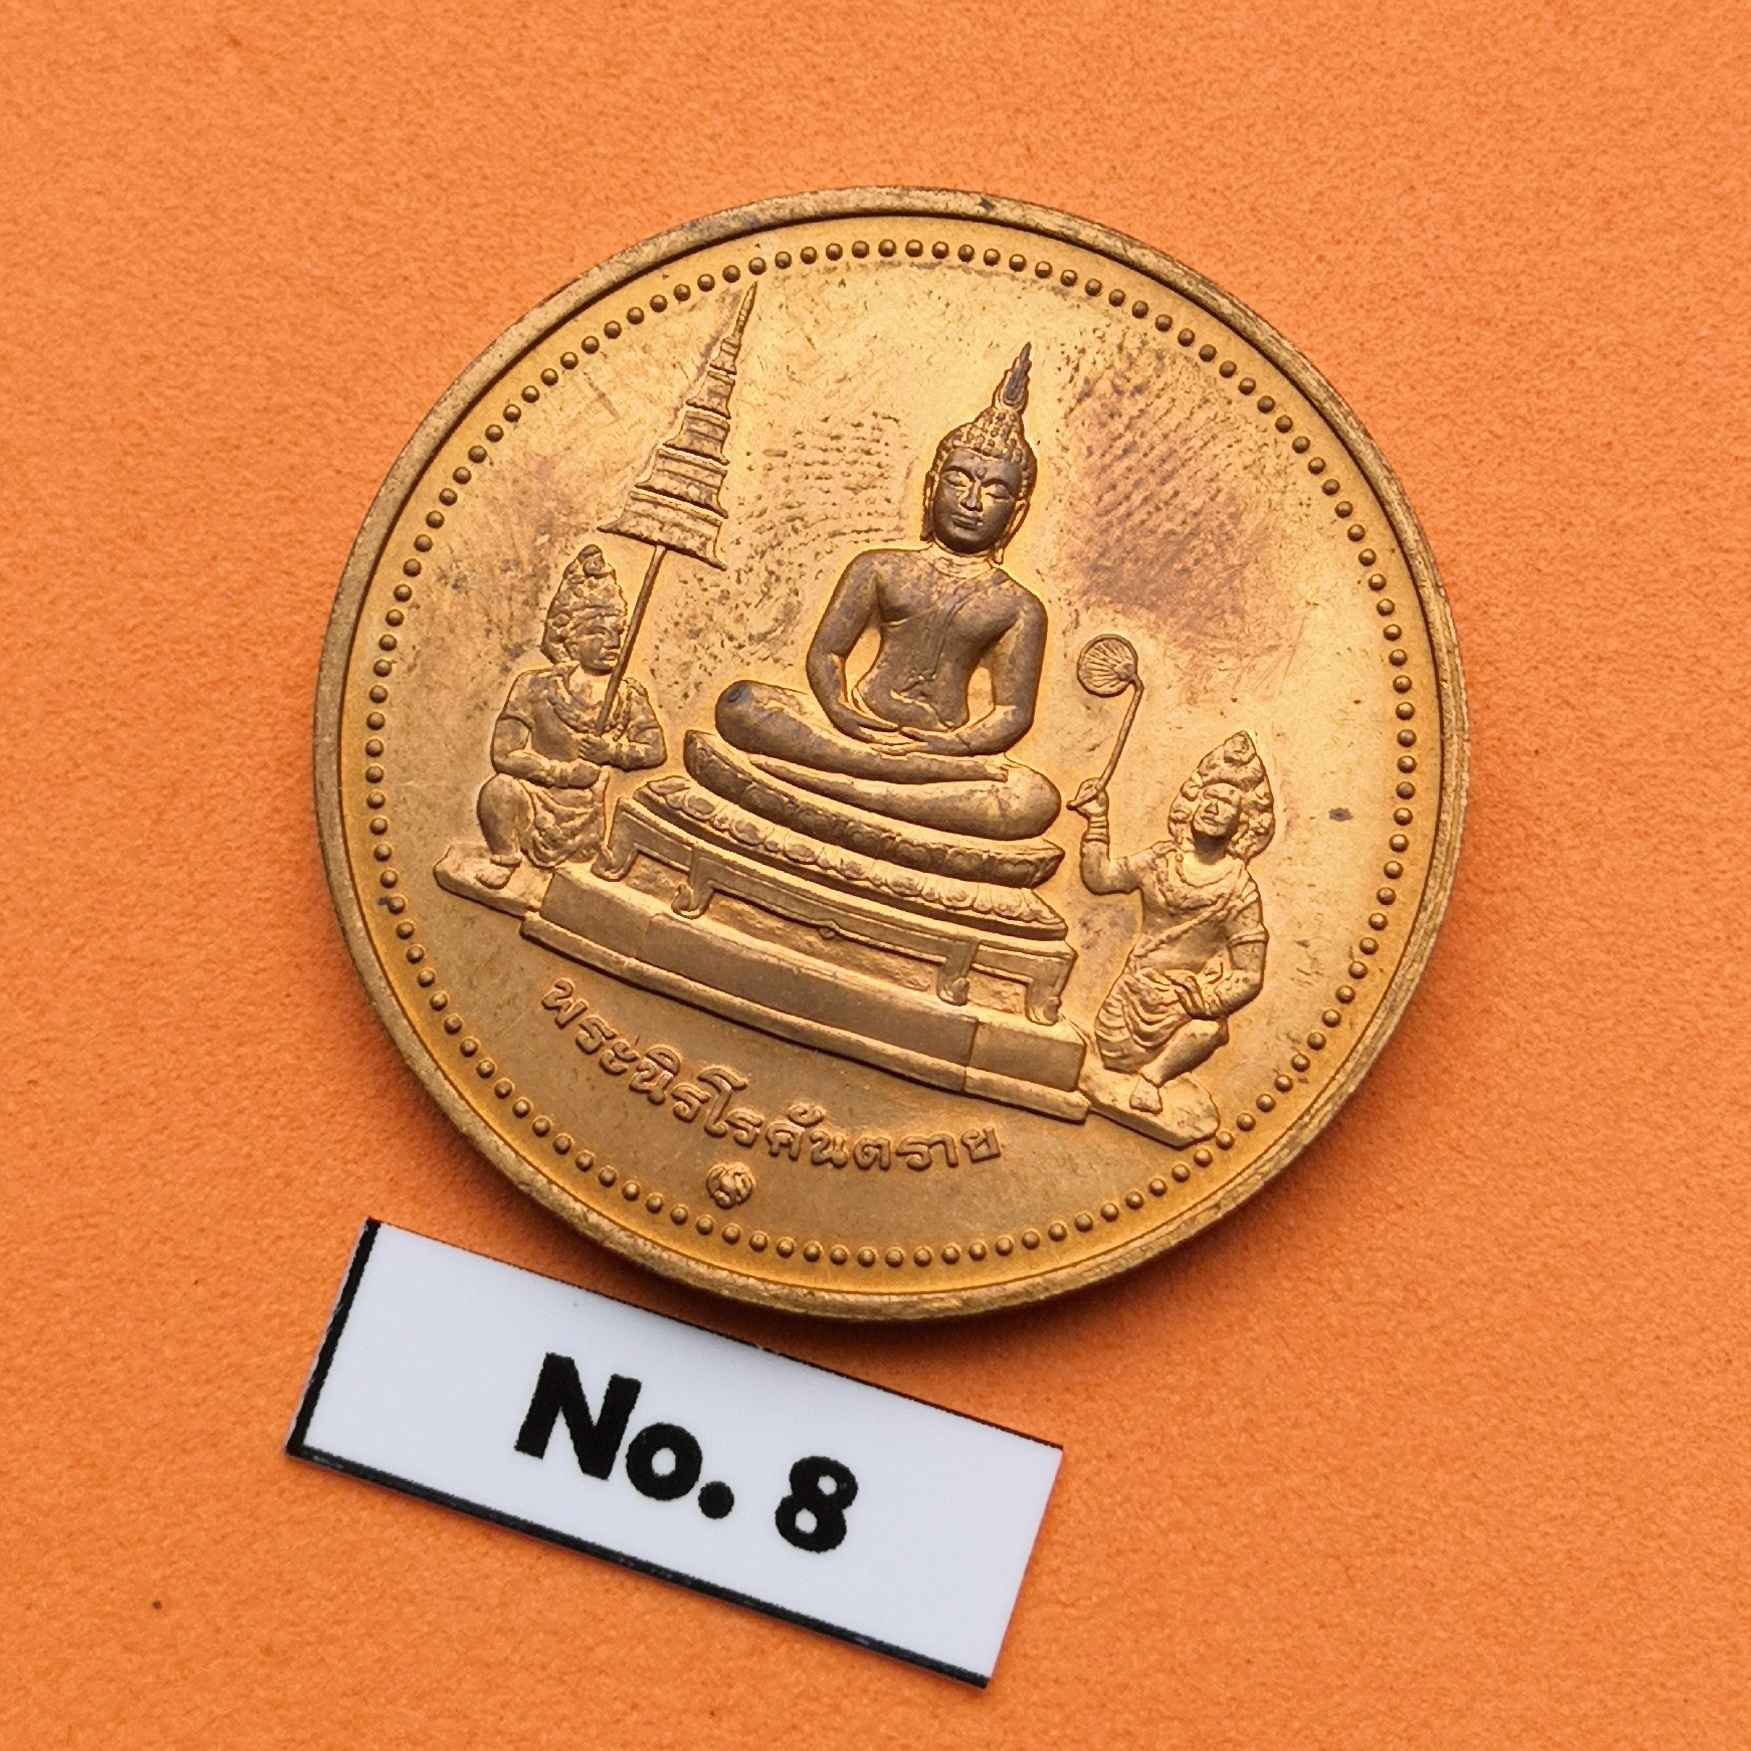 ภาพประกอบของ เหรียญท้าวฮู พระนิรโรคันตราย ท้าวหิรัญพนาสูร เทพผู้พิทักษ์รัชกาลที่ 6 ที่ระลึกในวโรกาสฉลองพระบรมราชสมภพ 120 ปี พระมงกุฏเกล้า